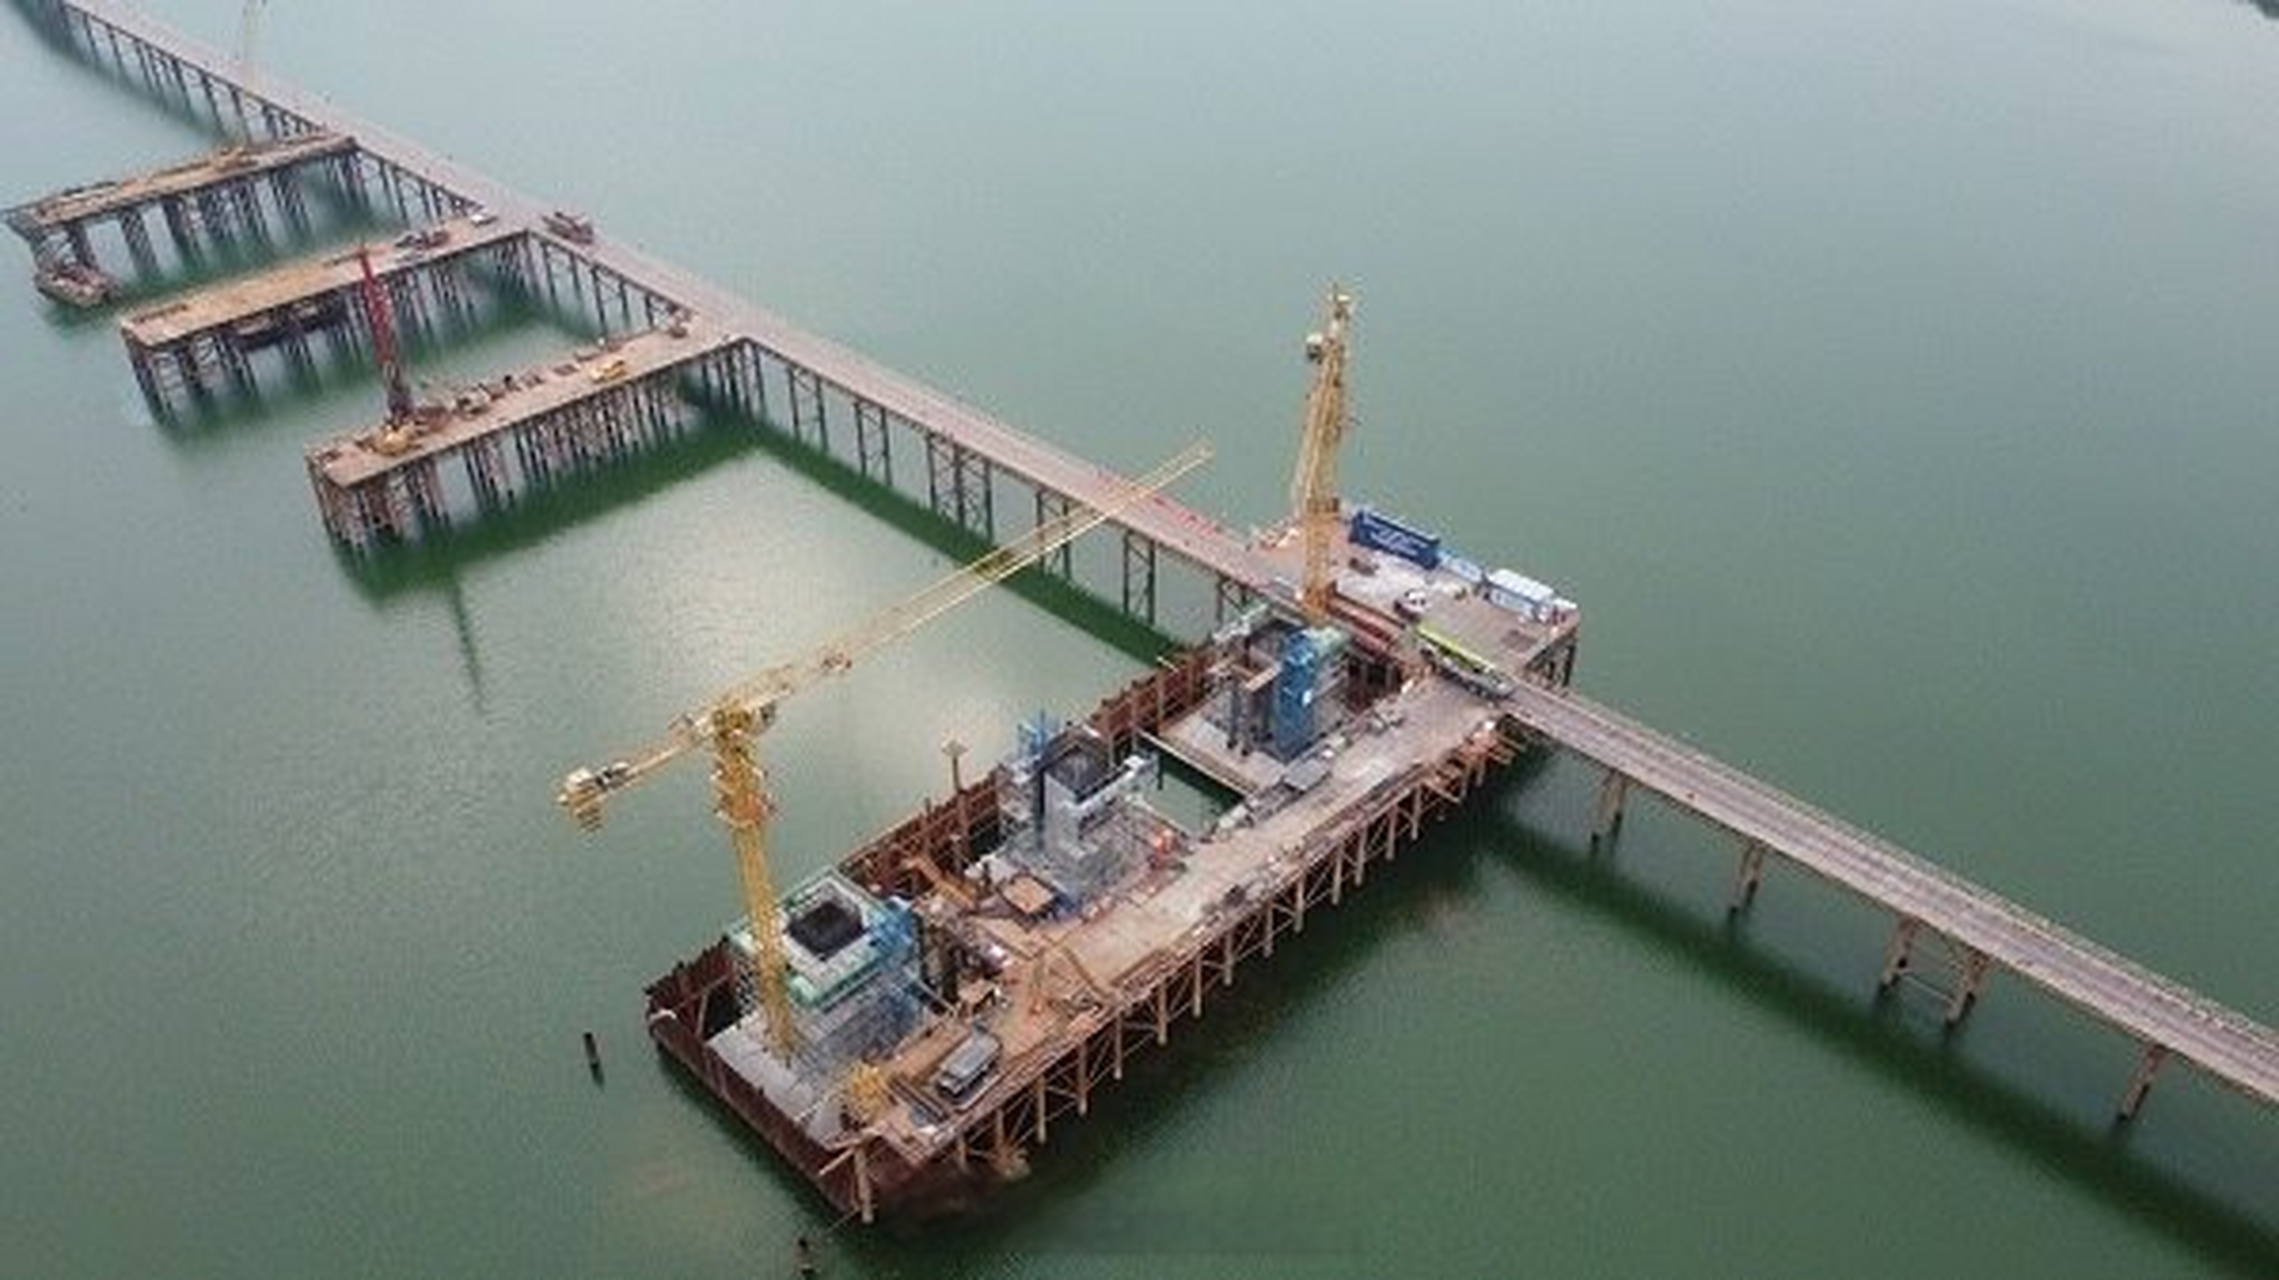 遂宁涪江六桥规划调整图片